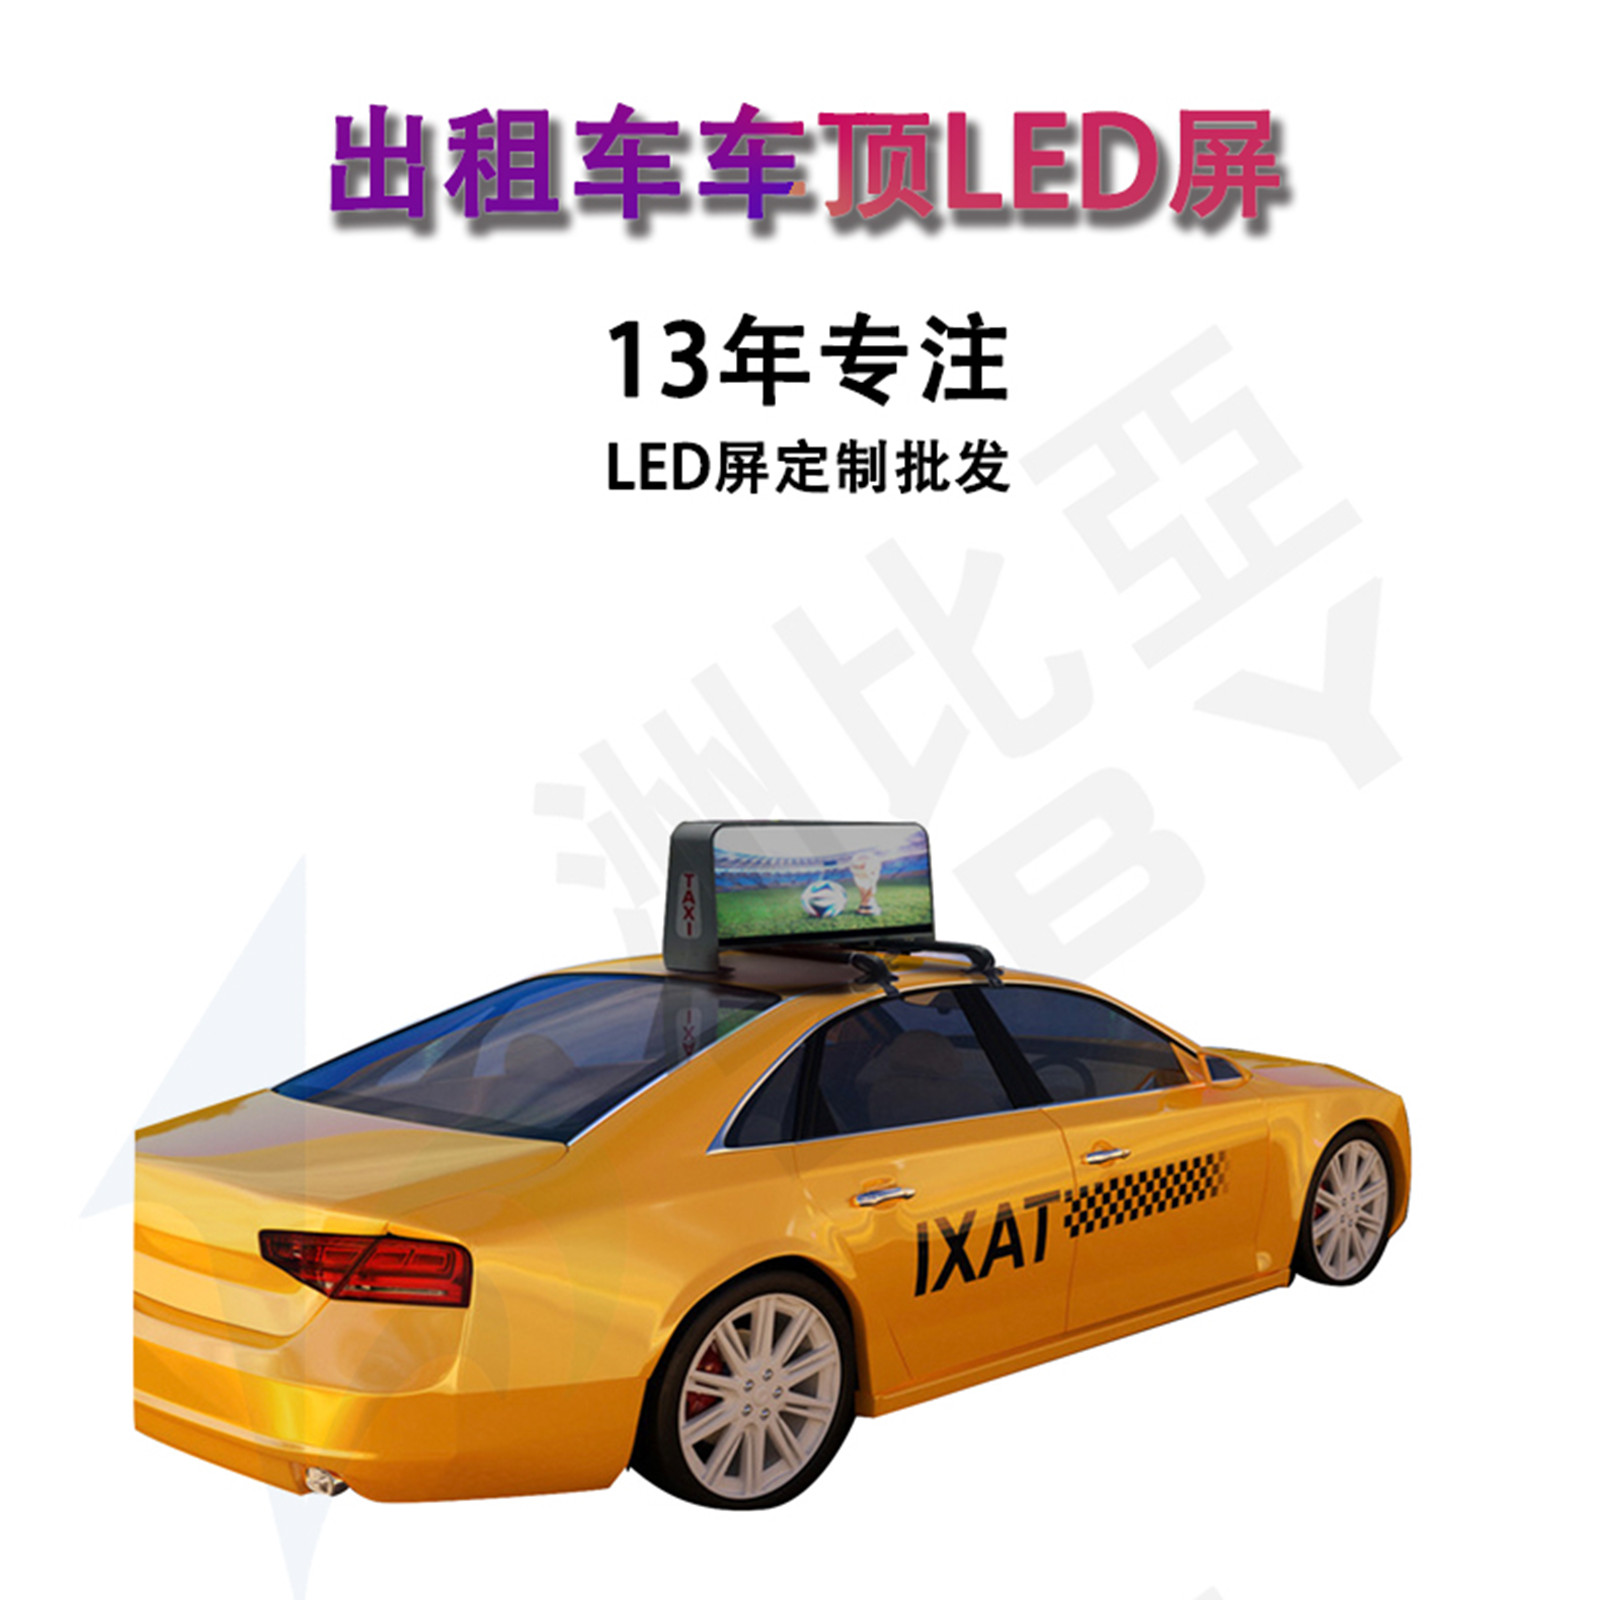 出租车顶双面LED全彩显示屏 出租车后窗广告屏 出租车顶LED广告屏 出租车智能LED显示屏